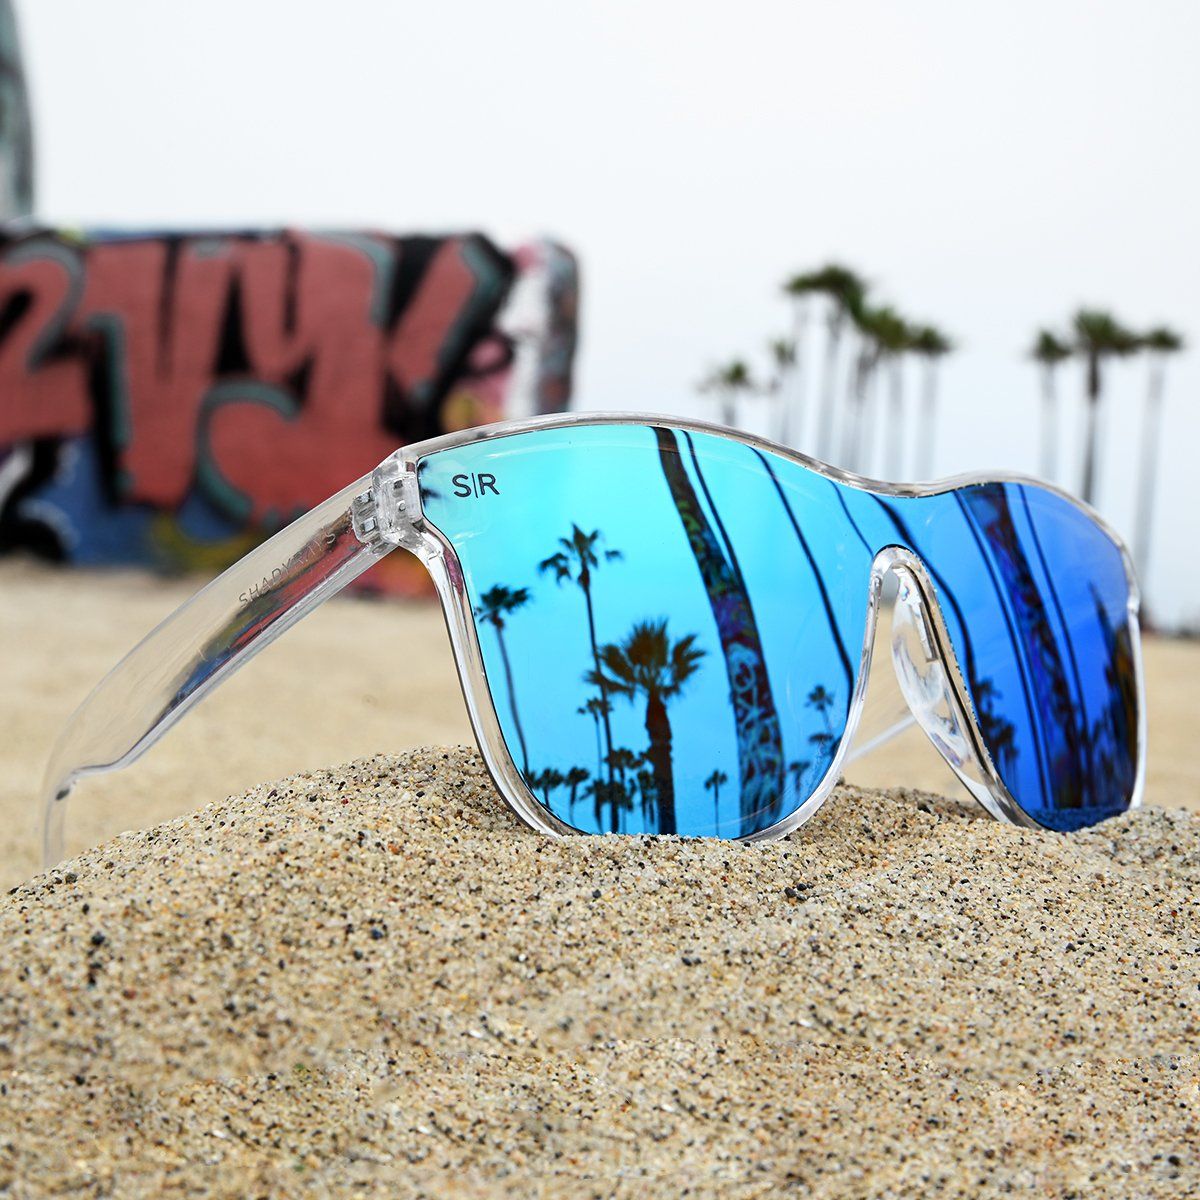 HighRise - Ocean Ice Polarized Highrise Shady Rays® | Polarized Sunglasses 